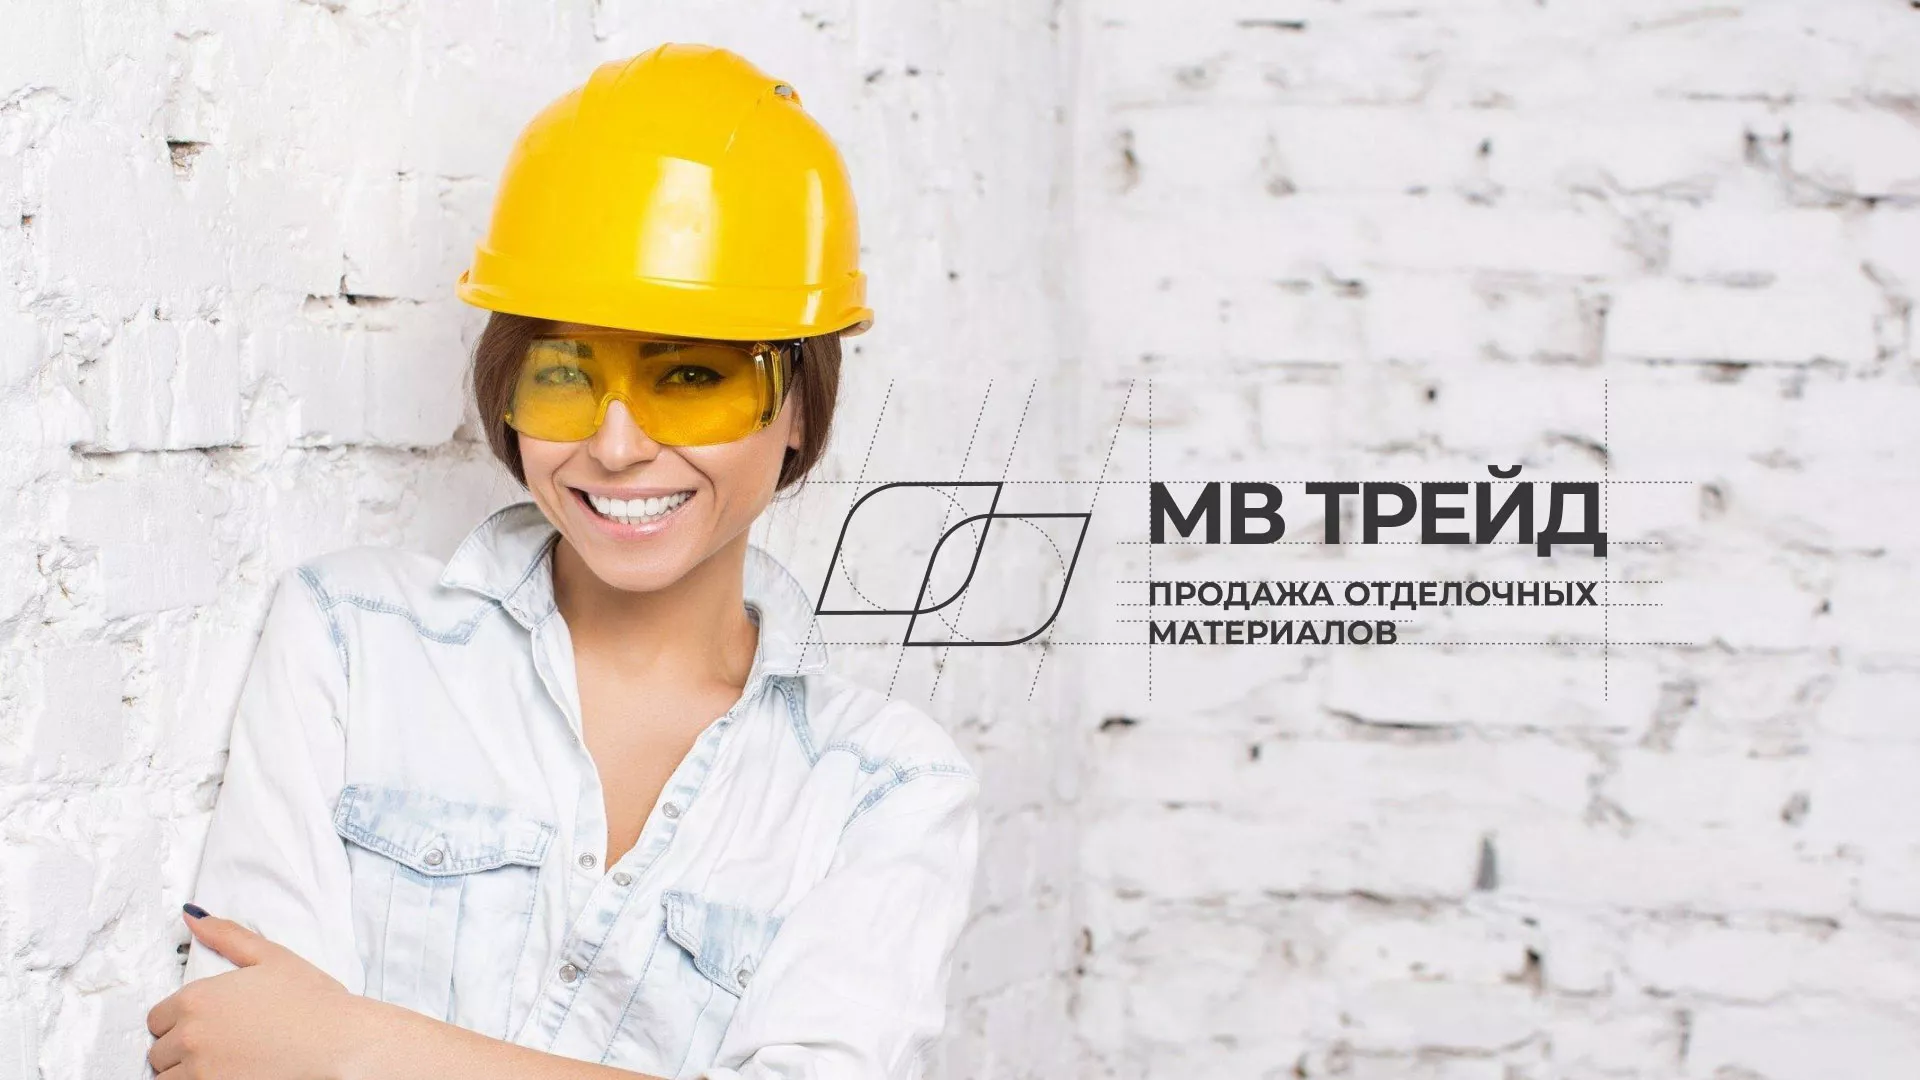 Разработка логотипа и сайта компании «МВ Трейд» в Усть-Лабинске